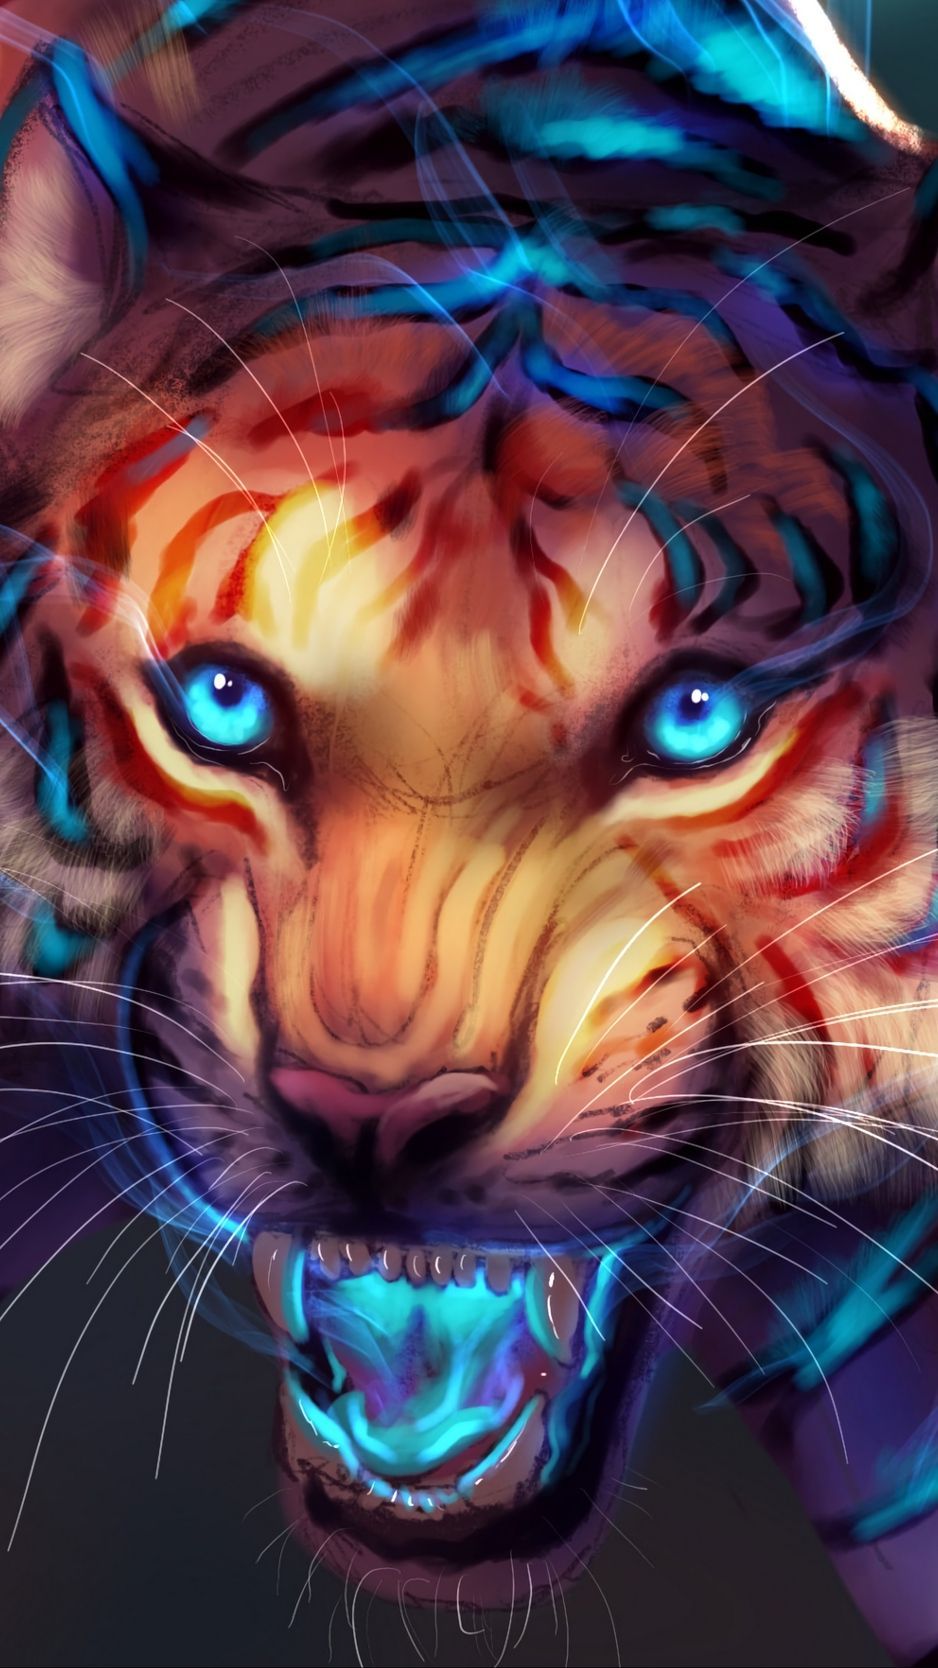 Tiger, art, grin, glow background. Tiger art, Tiger artwork, Lion art